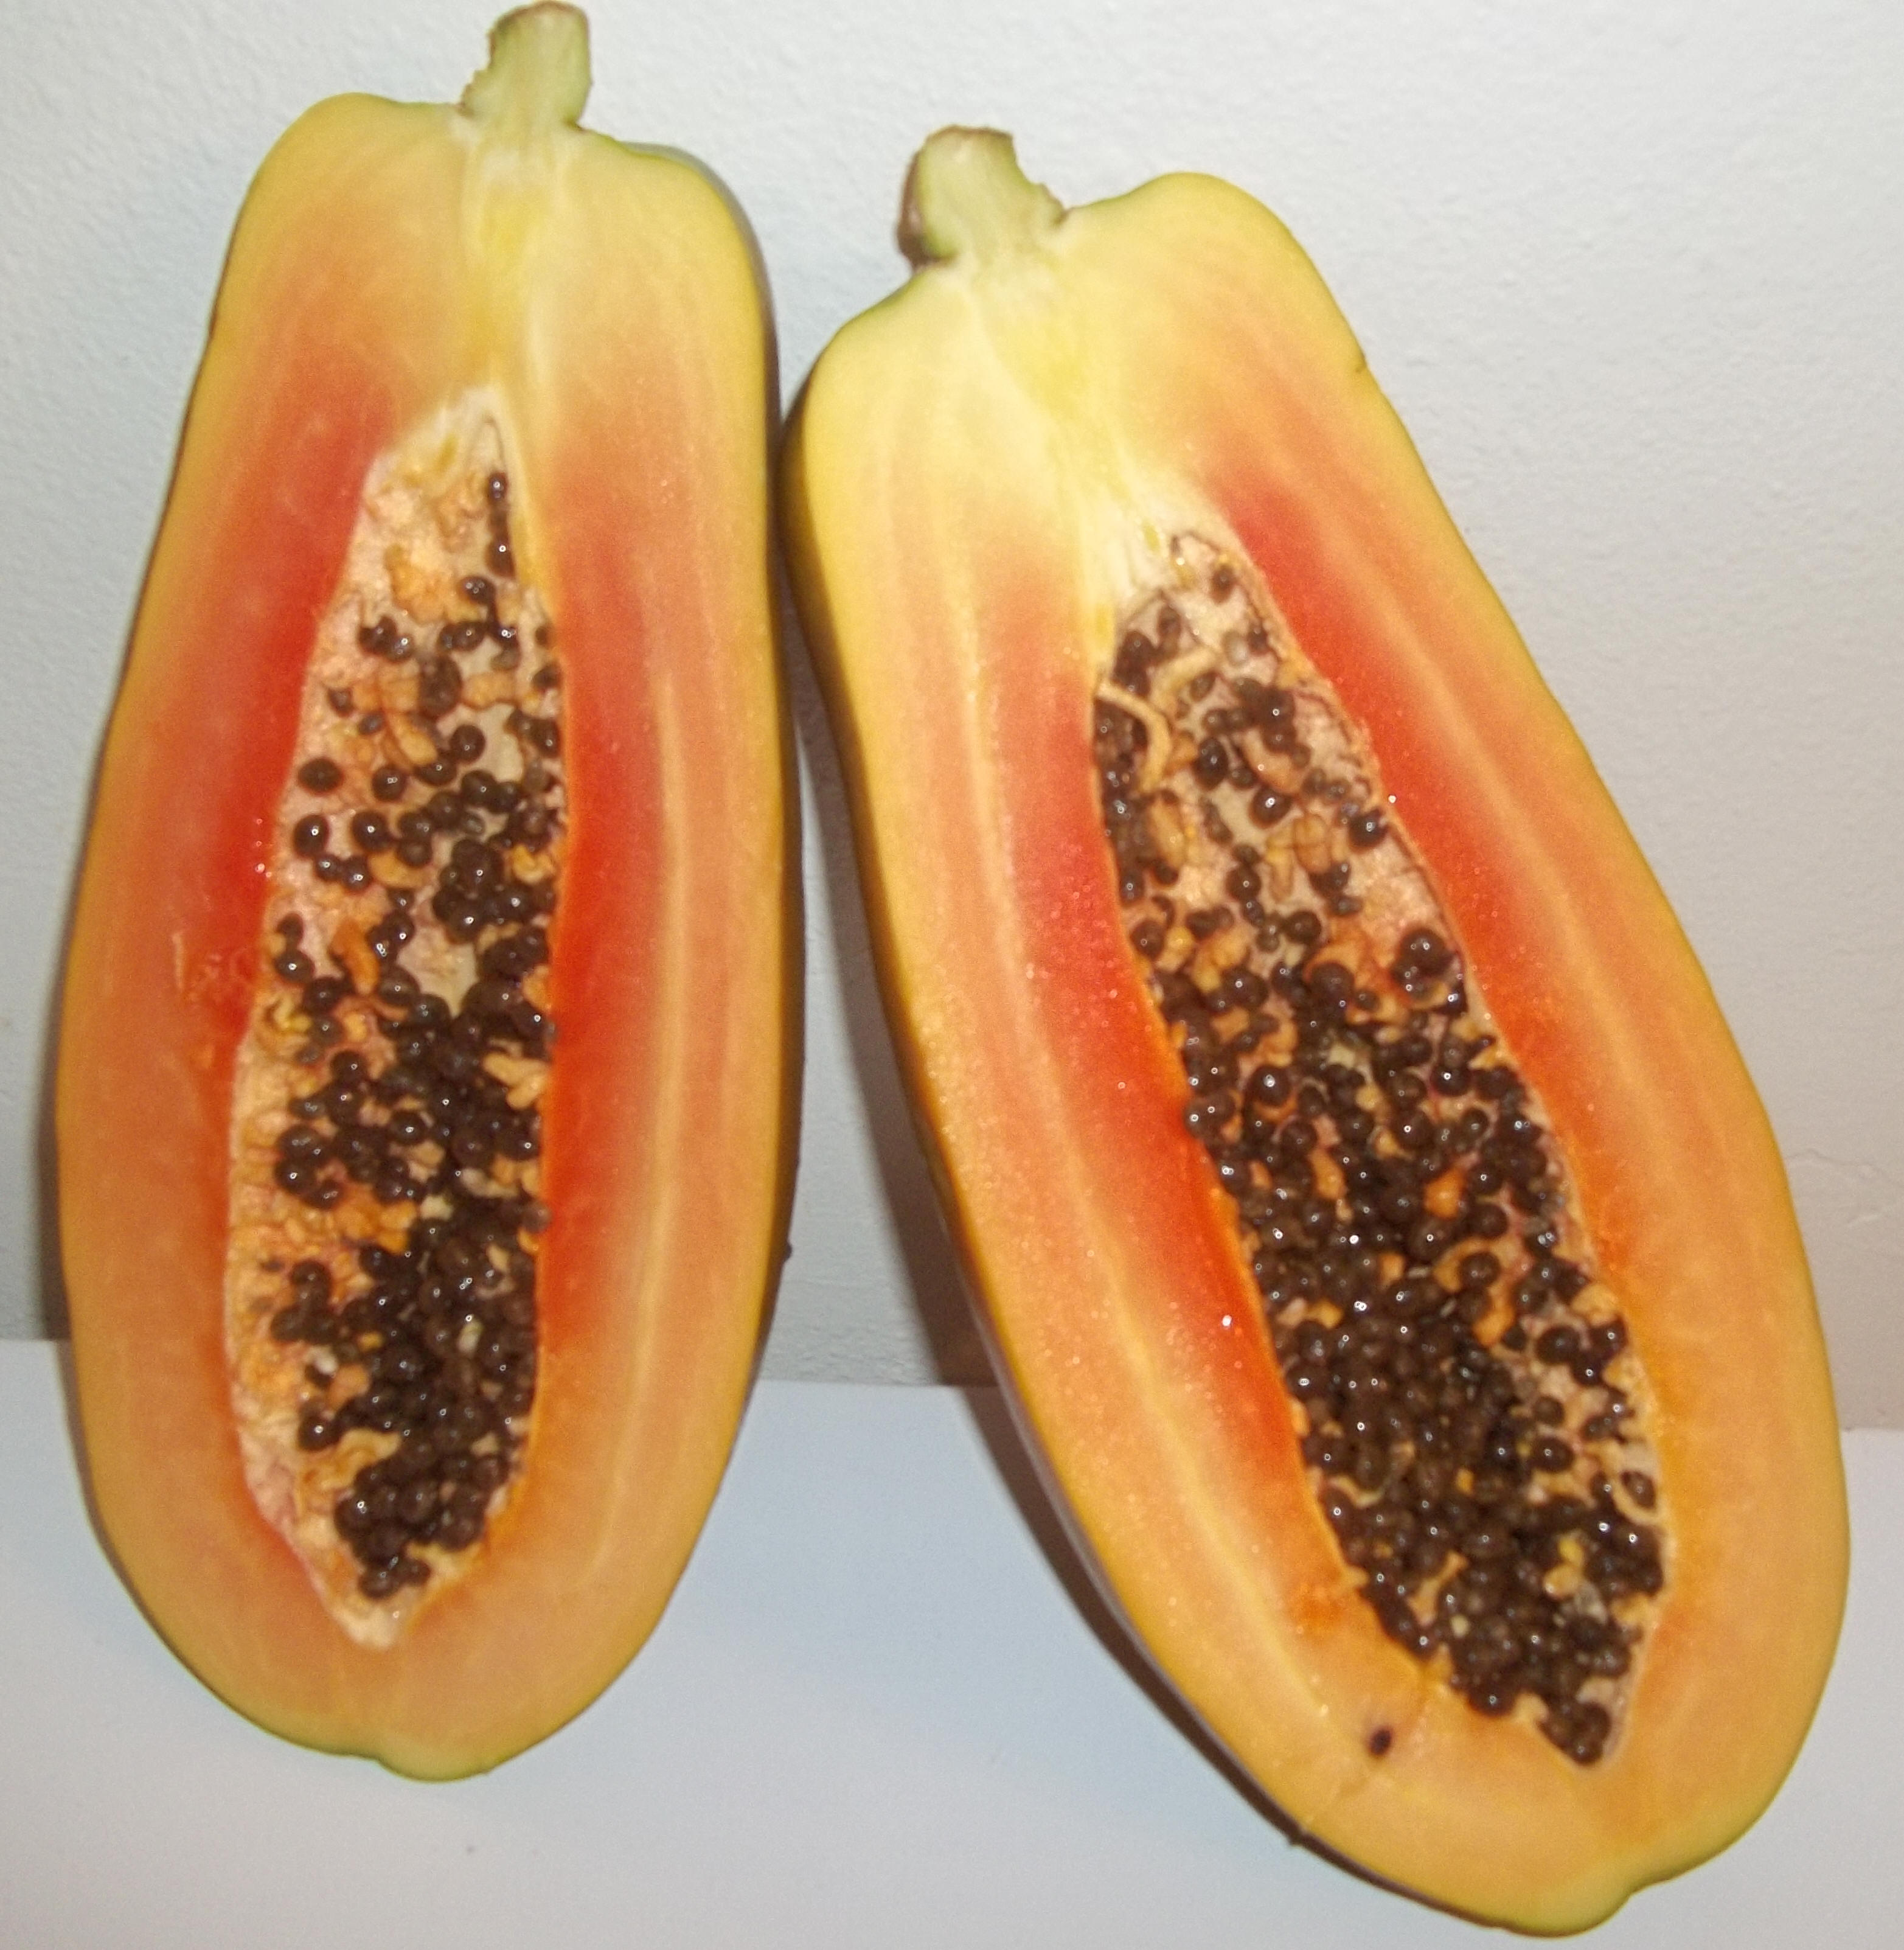 Carica Papaya. Image:  Theresa Klees